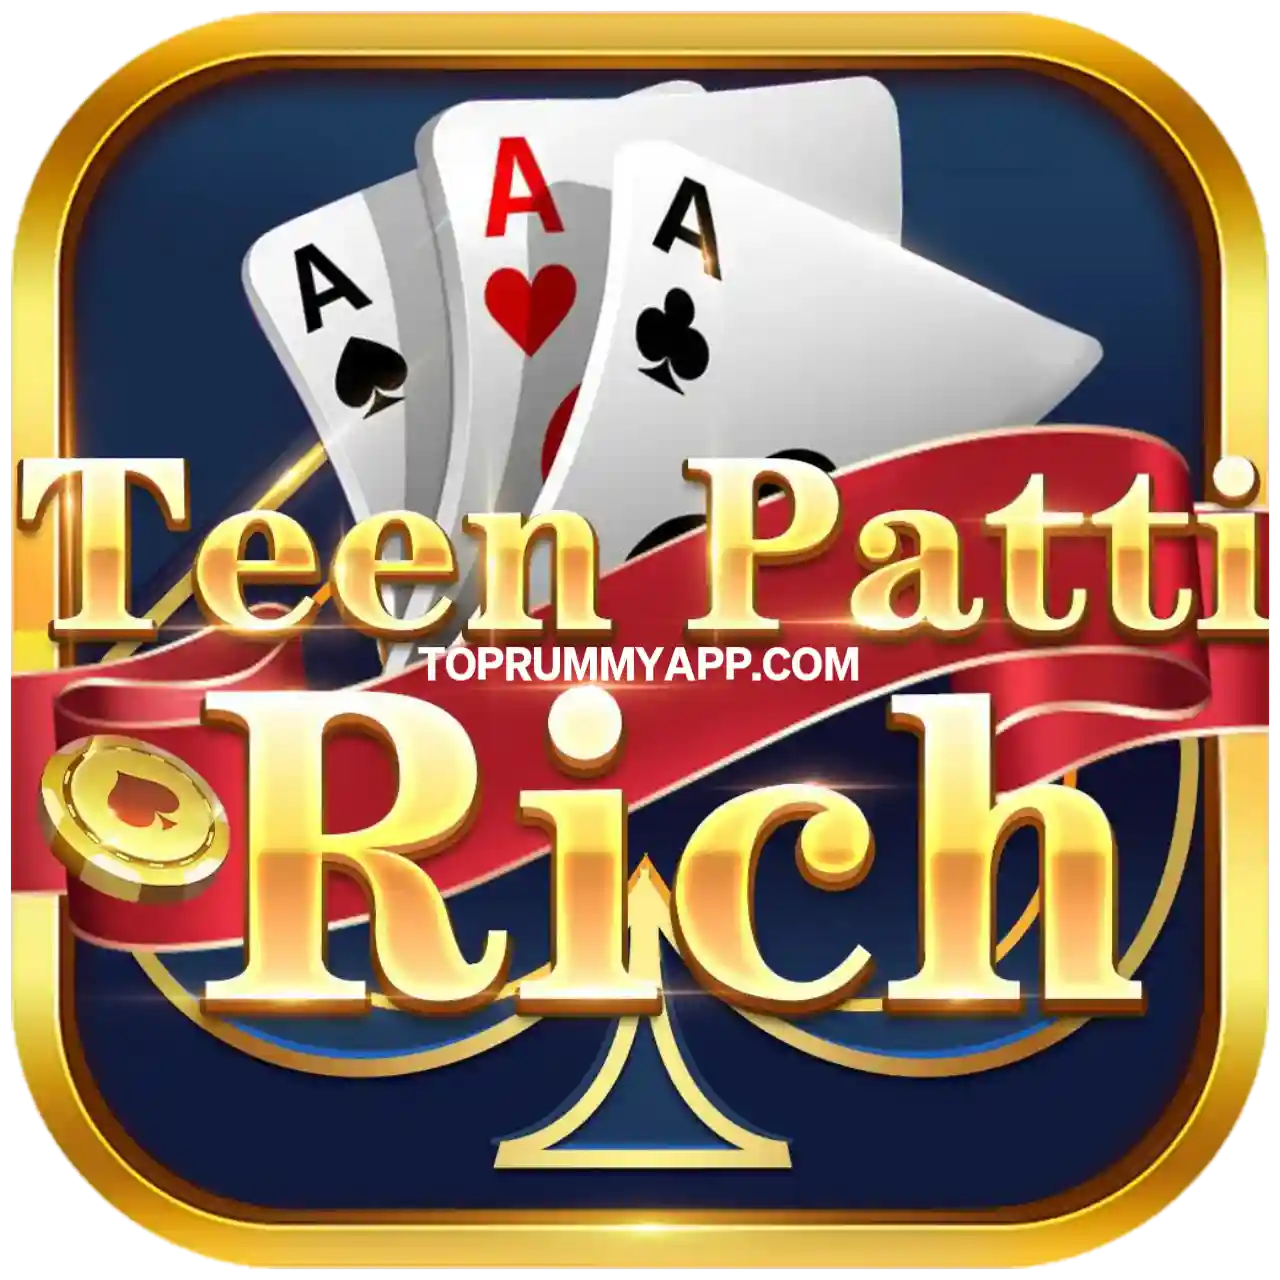 Teen Patti Rich App Download - All Teen Patti App List 10 Bonus